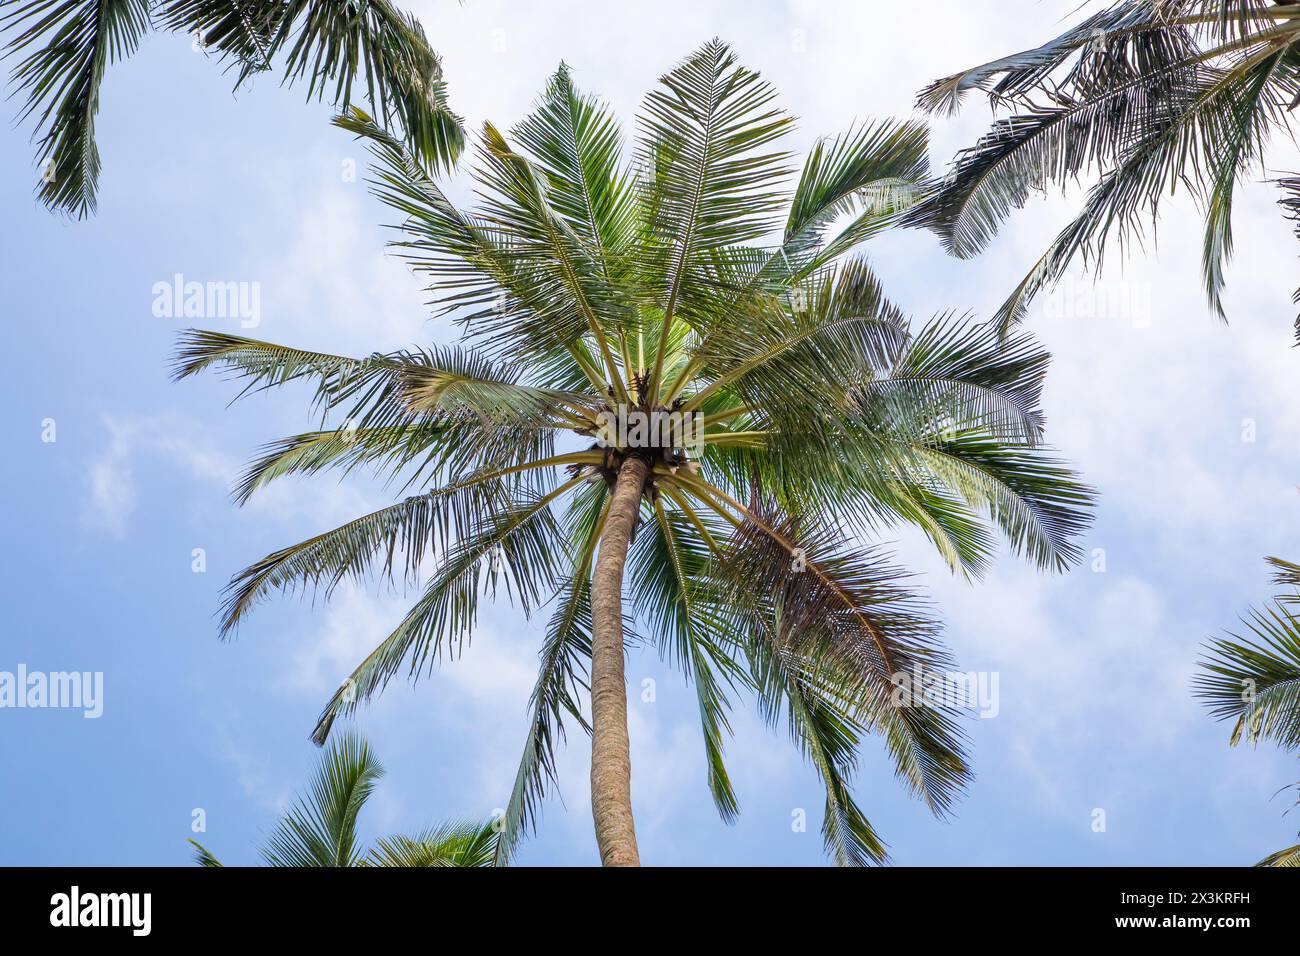 Sagome di alcune palme contro il cielo blu in un paese caldo. Foto Stock